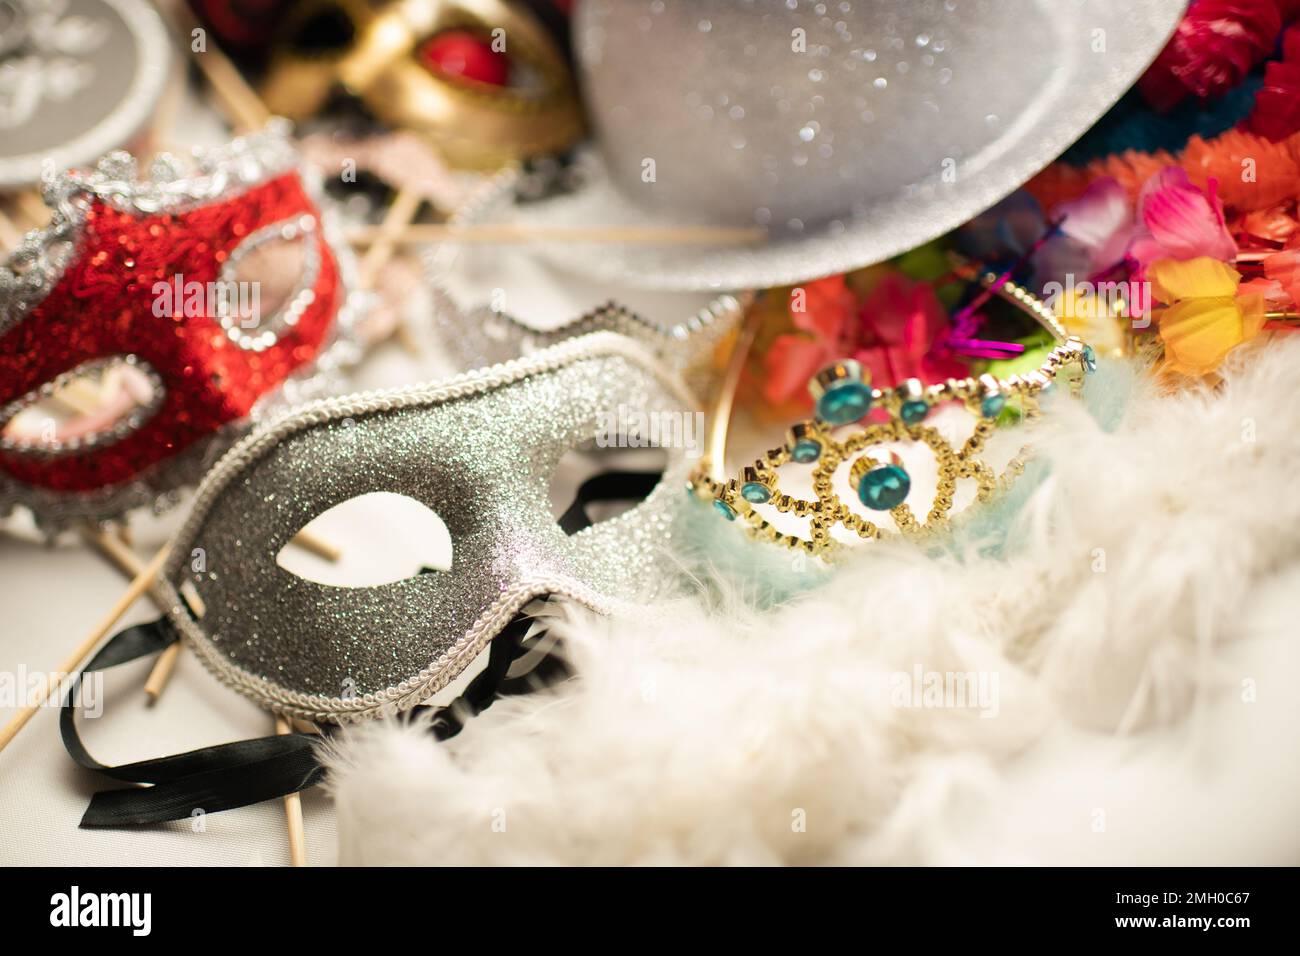 Masque de mascarade et autres accessoires décoratifs pour l'événement de fête Banque D'Images